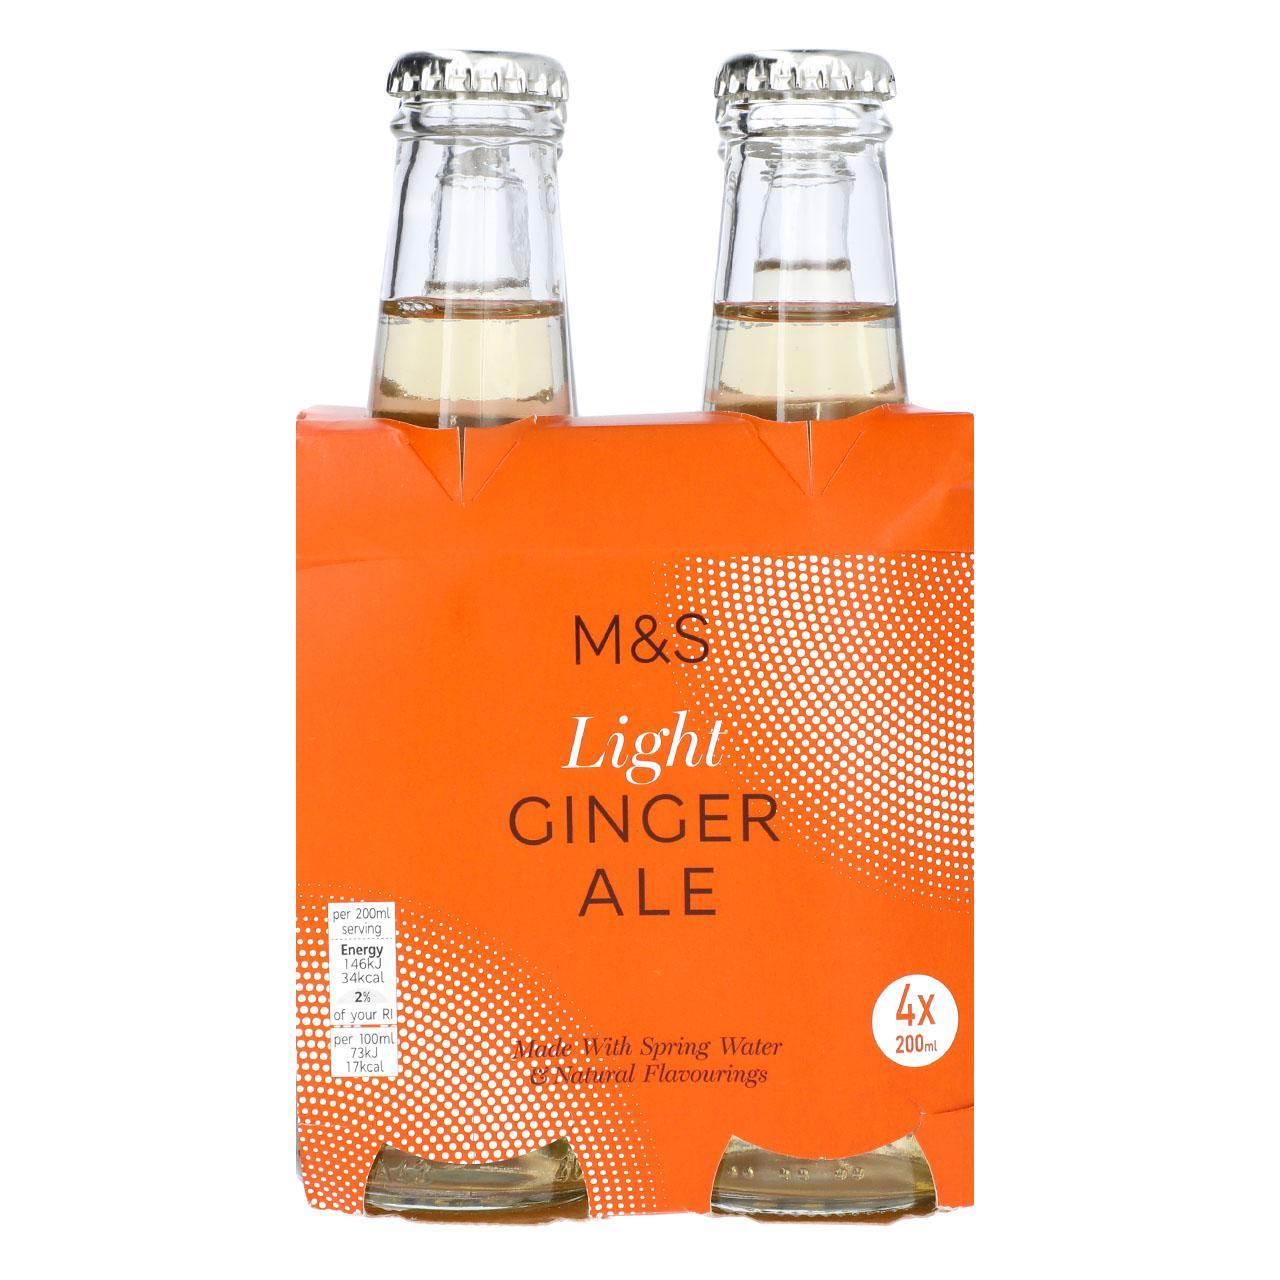 M&S Light Ginger Ale - HelloSupermarket